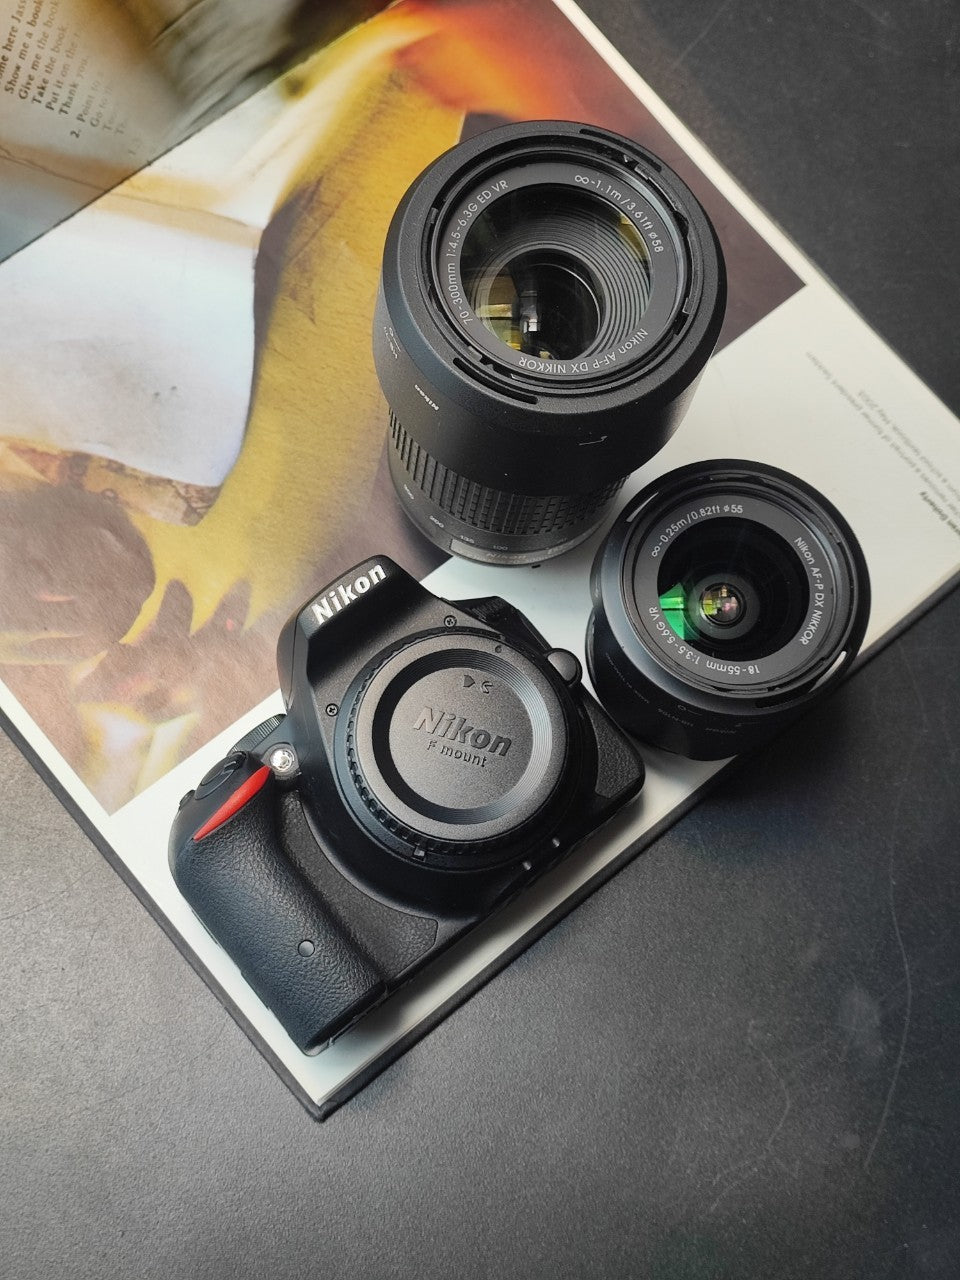 尼康 D5200 配 2 个镜头